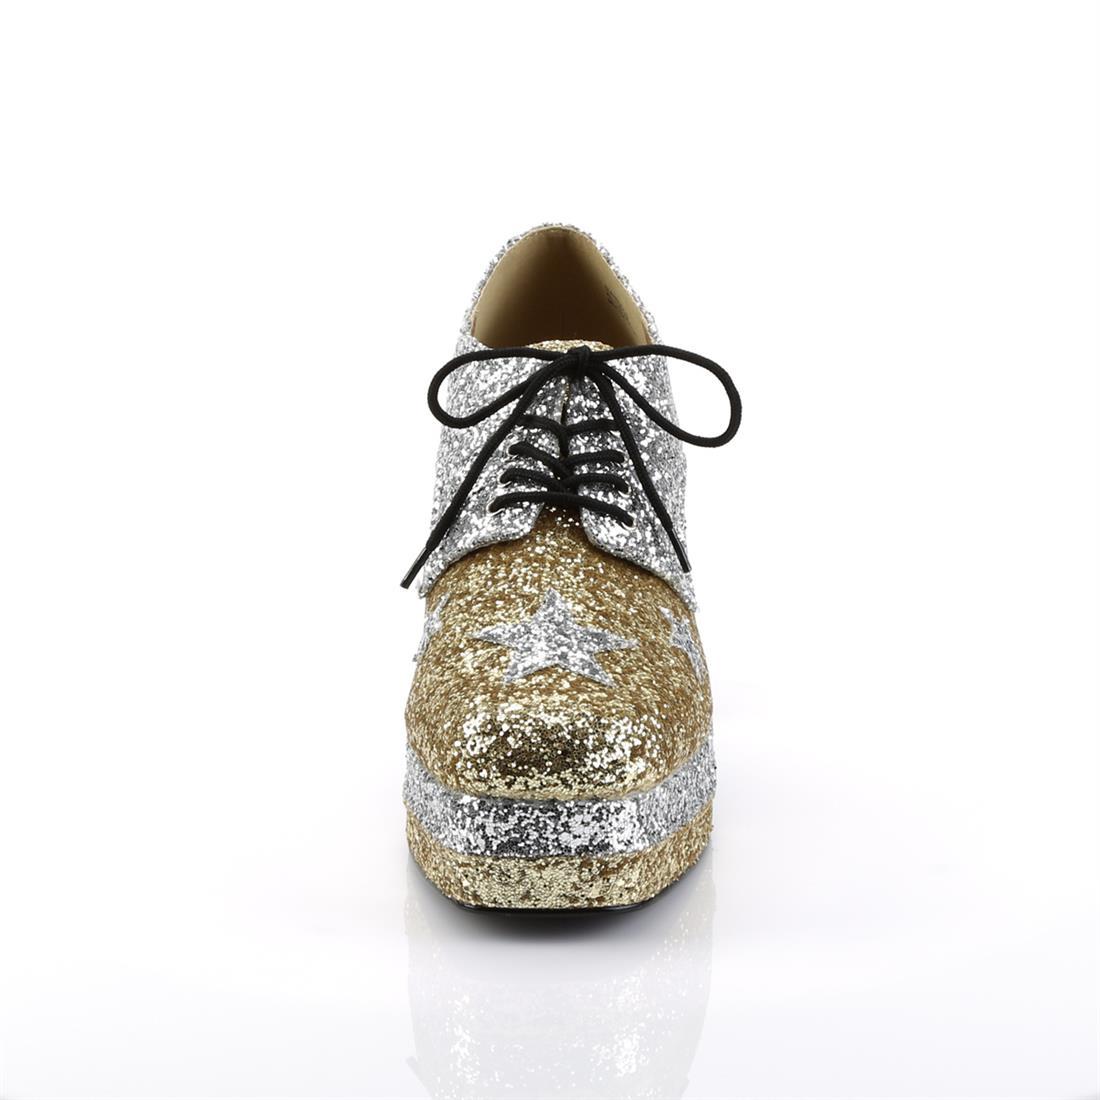 Glam Rock Platform Shoes - Gold/Silver